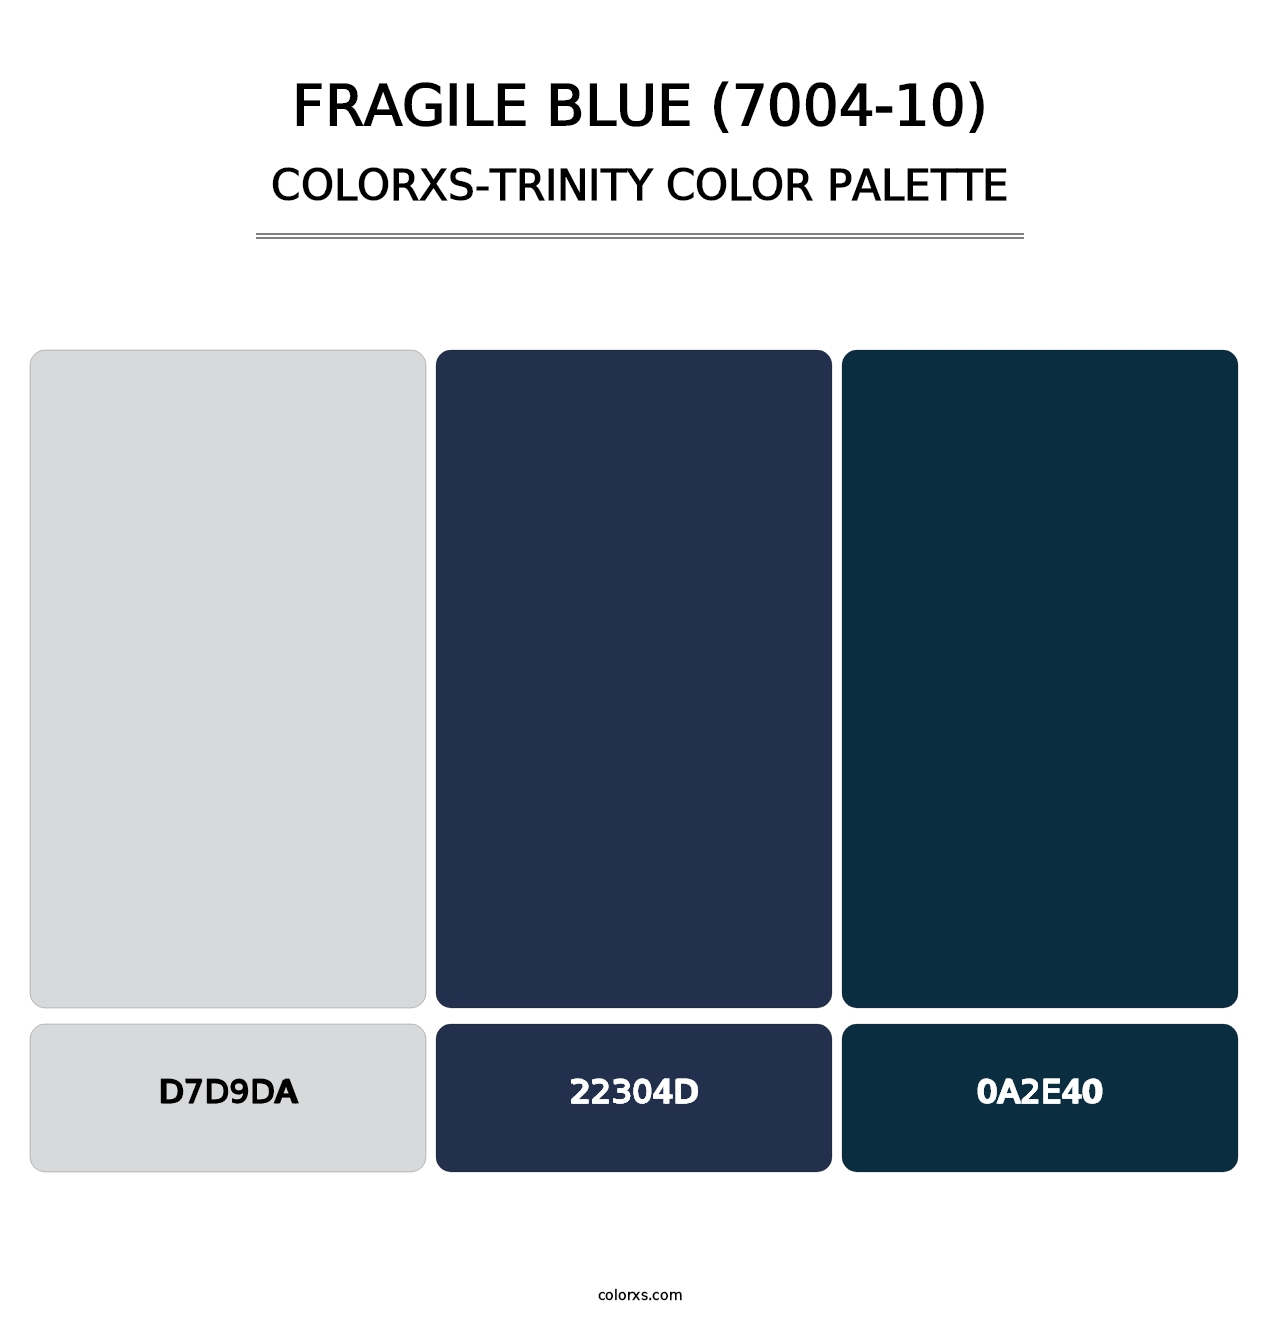 Fragile Blue (7004-10) - Colorxs Trinity Palette